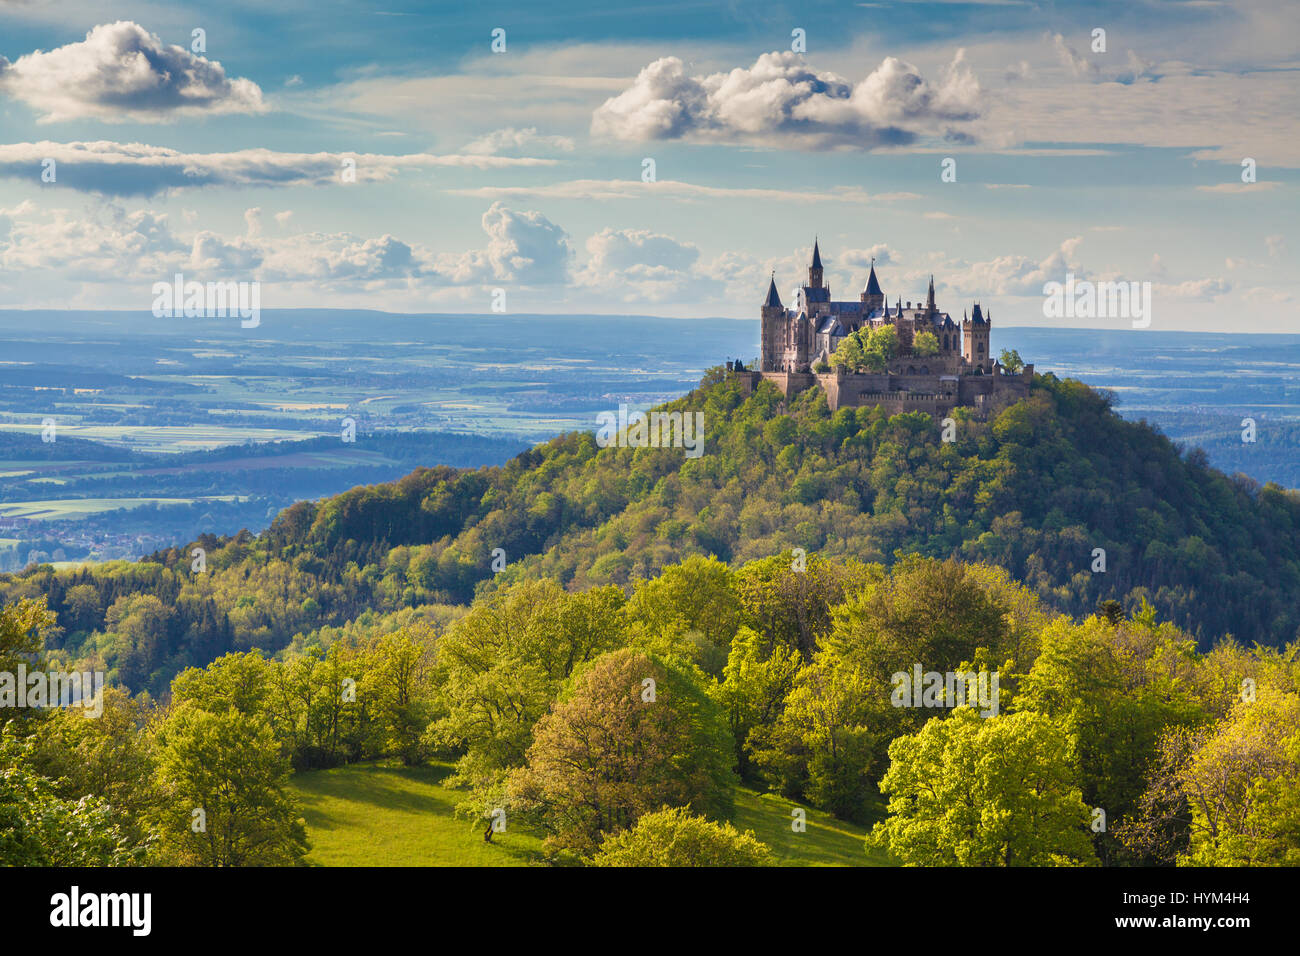 Vista aérea del famoso castillo de Hohenzollern, uno de los castillos más visitados de Europa, al atardecer, Baden-Wurttemberg, Alemania Foto de stock